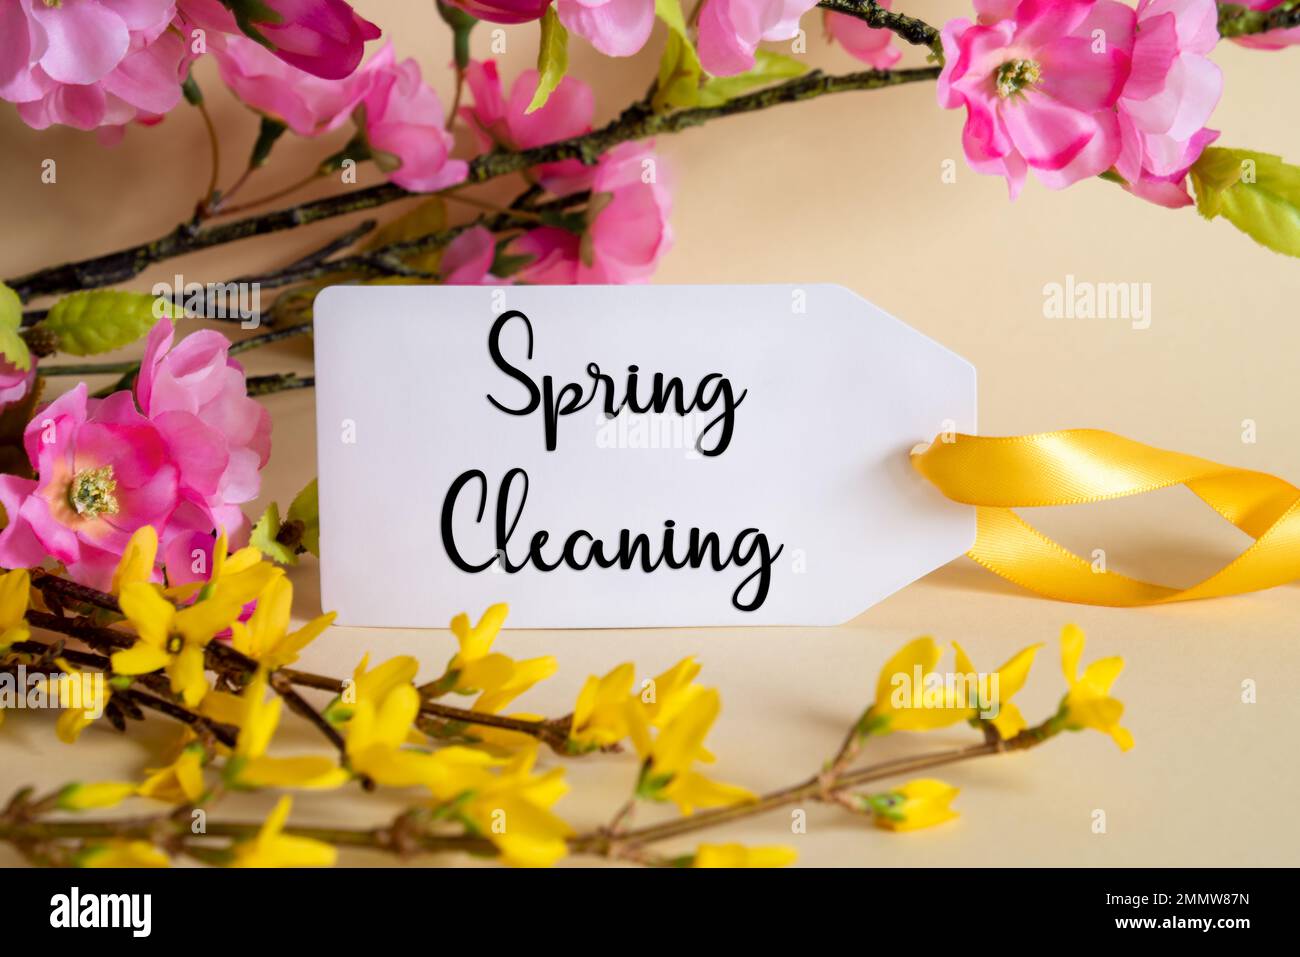 Décoration de printemps, étiquette avec texte anglais nettoyage de printemps  Photo Stock - Alamy